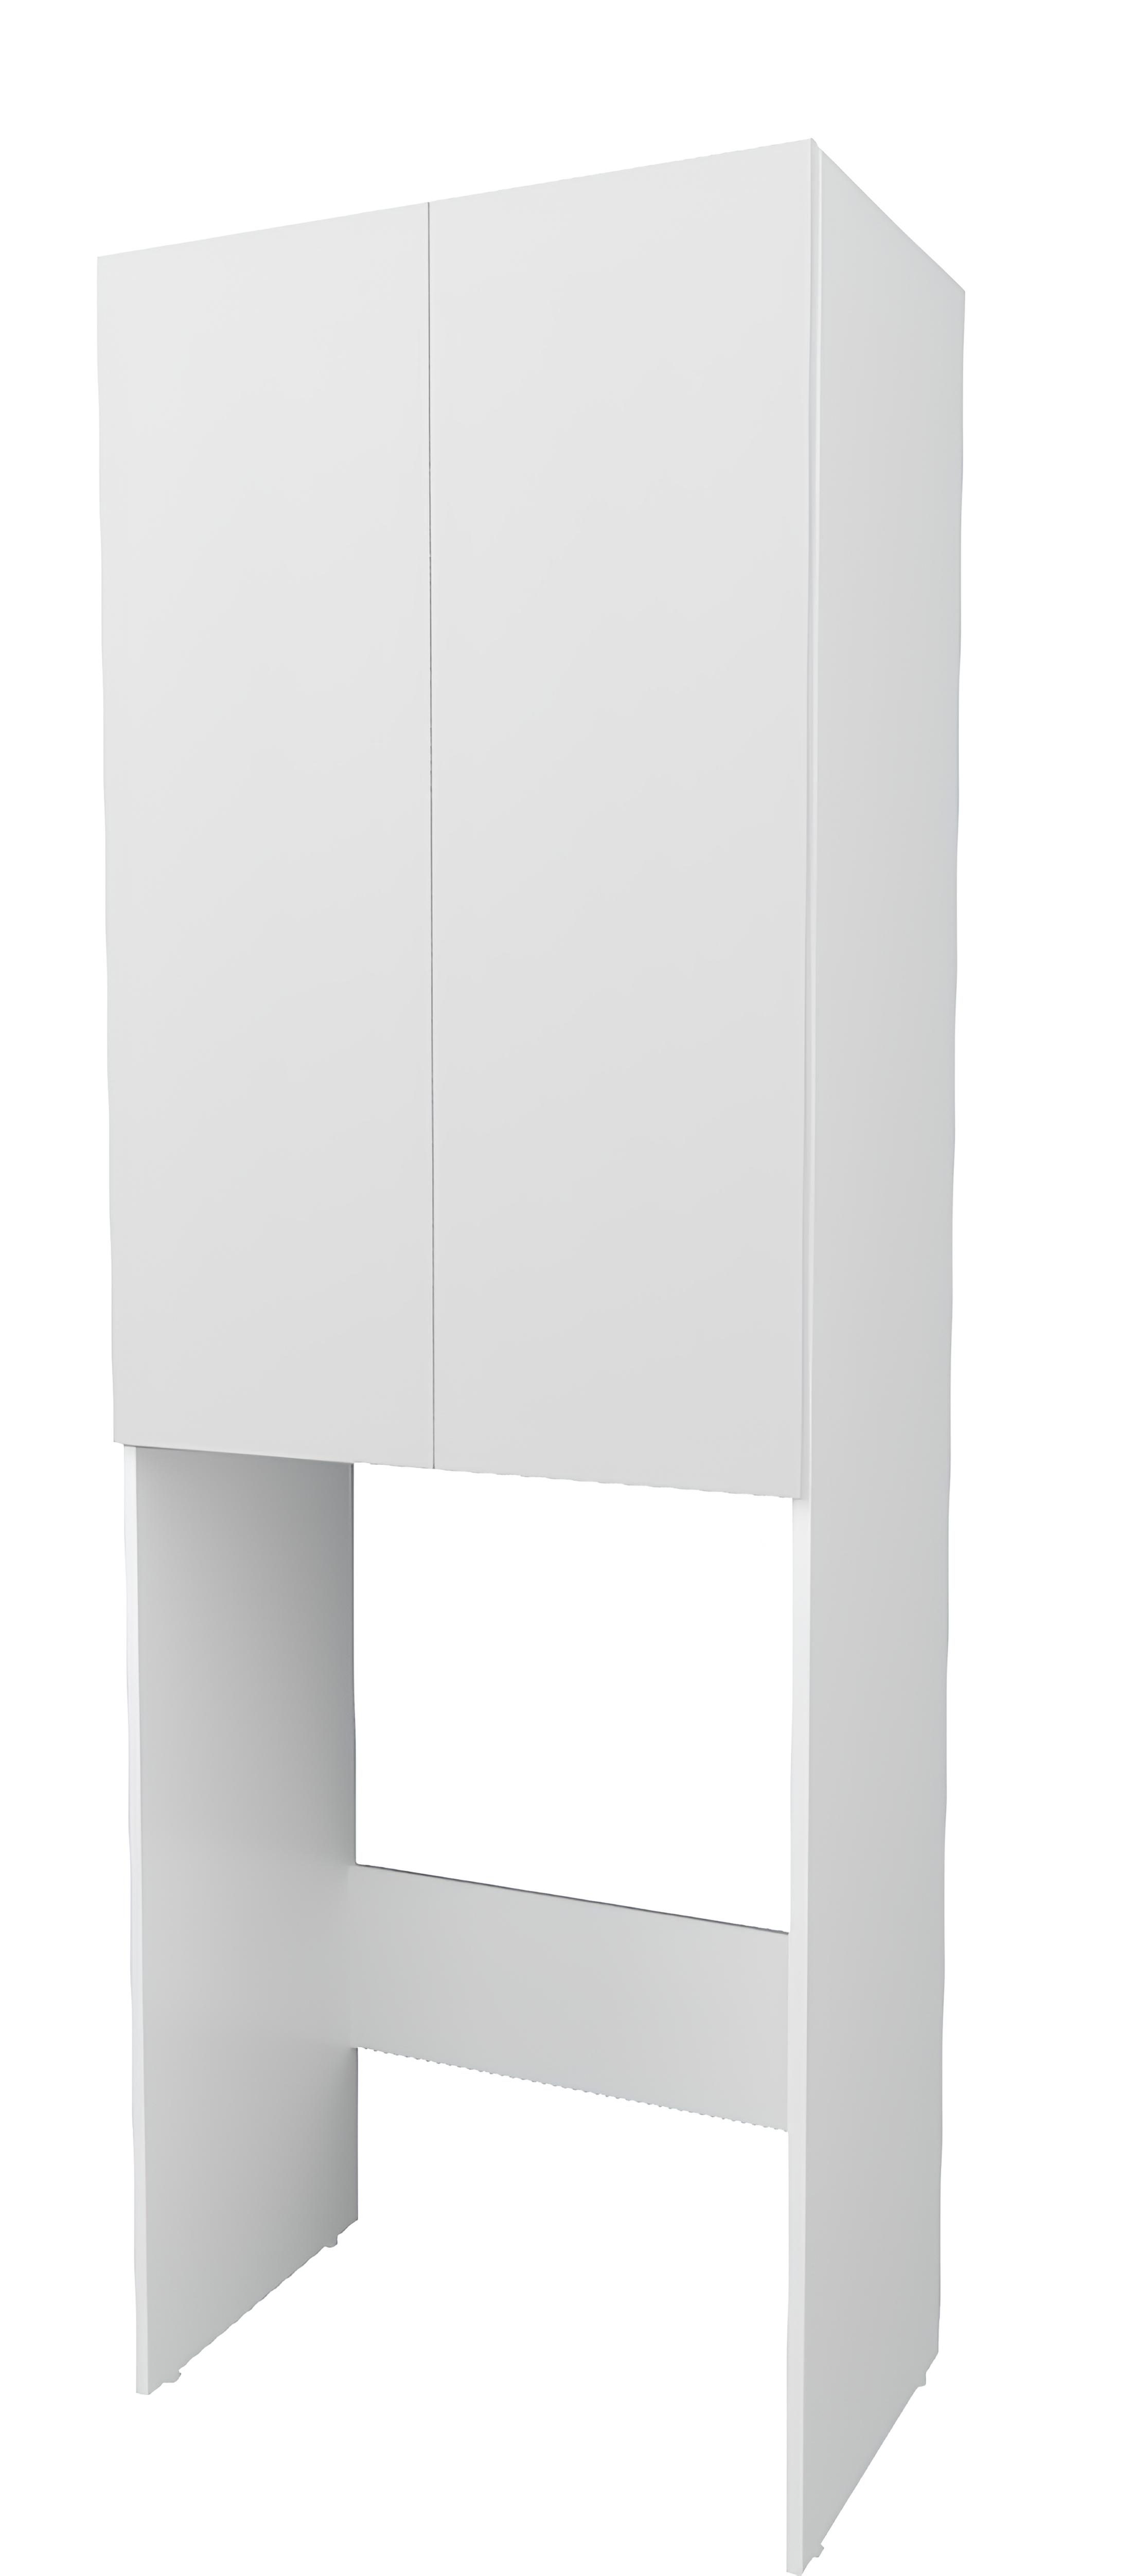 Шкаф напольный 1Marka Wall 2 дверцы цвет Белый глянец У79528